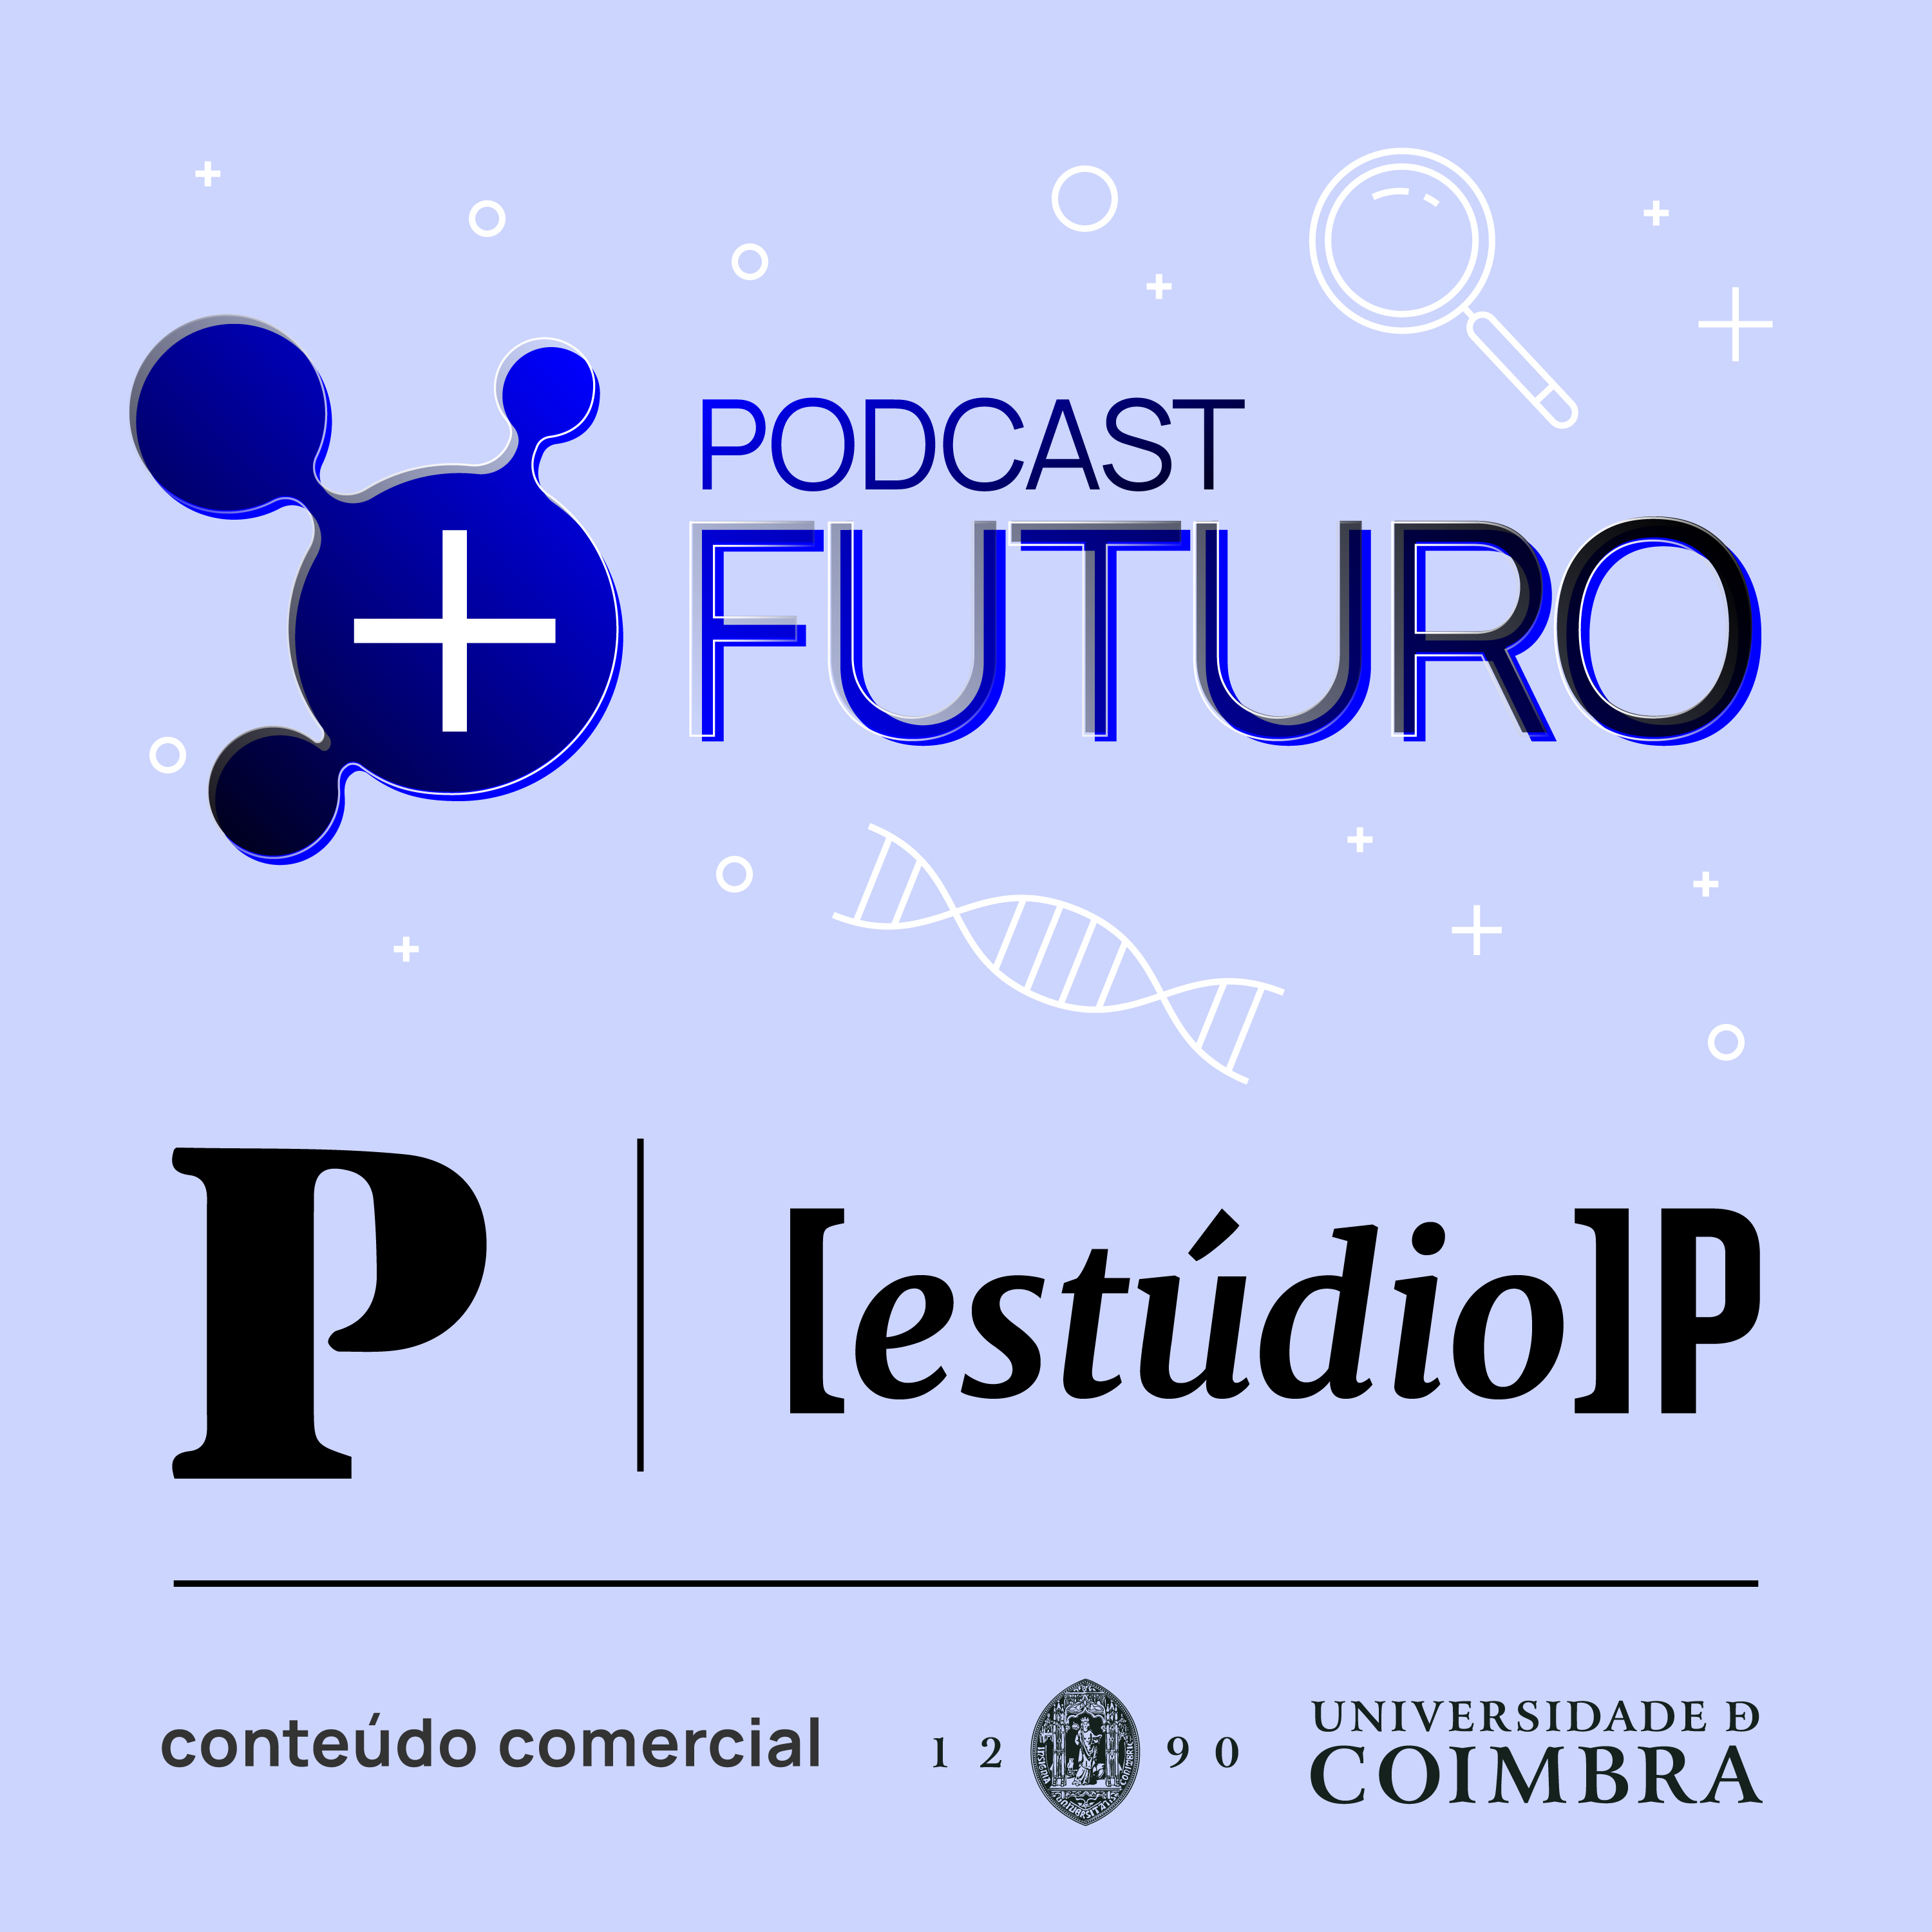 Podcast + Futuro